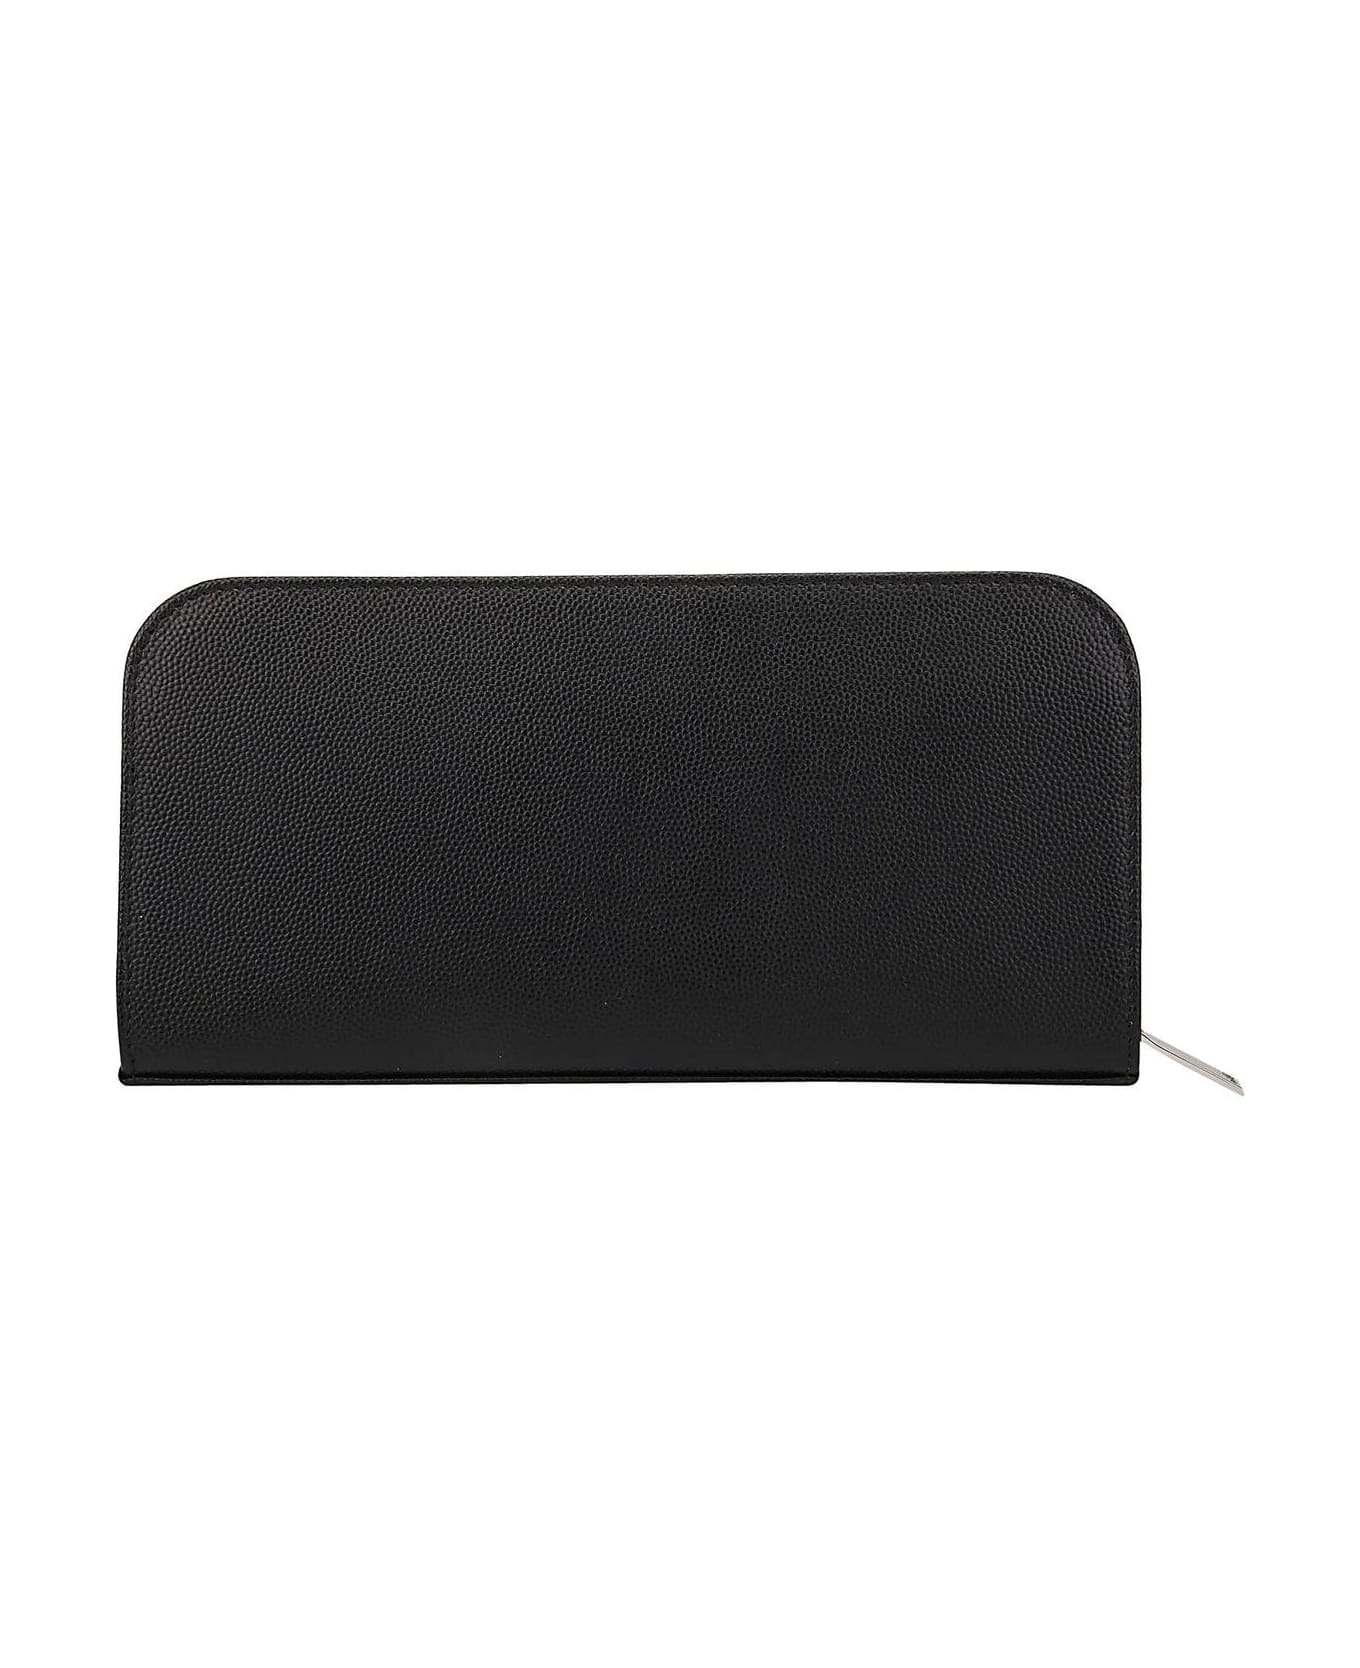 Saint Laurent Black Leather Wallet - Nero